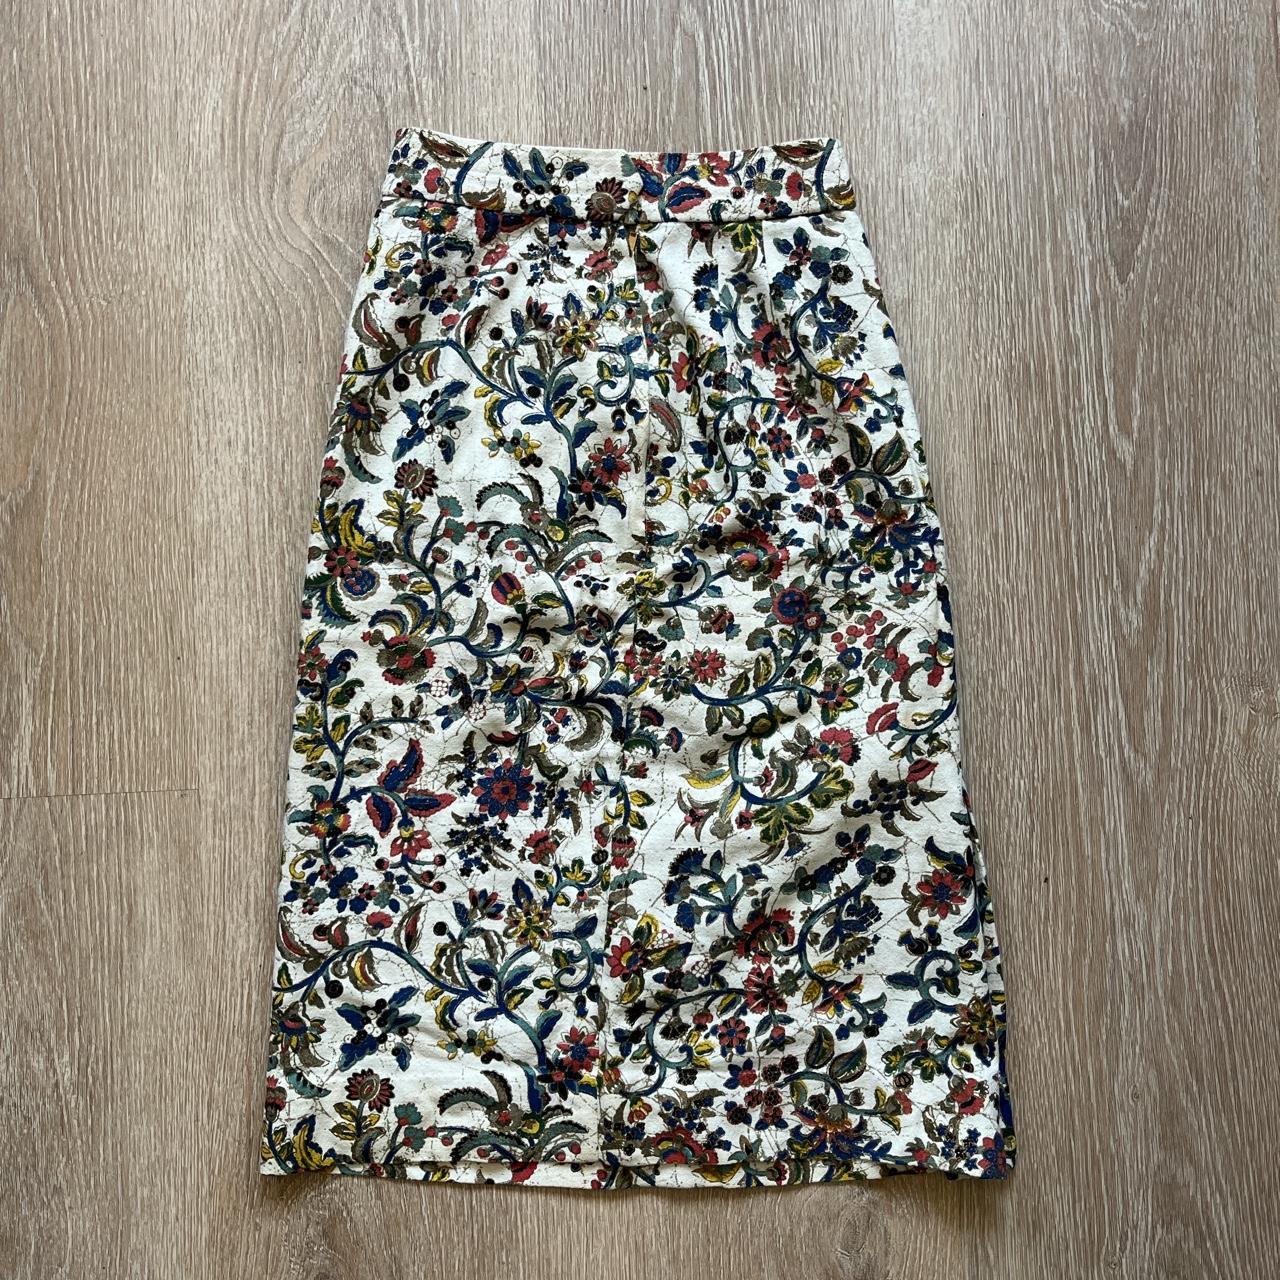 Vintage Deponirt Japanese Design Skirt beautiful... - Depop